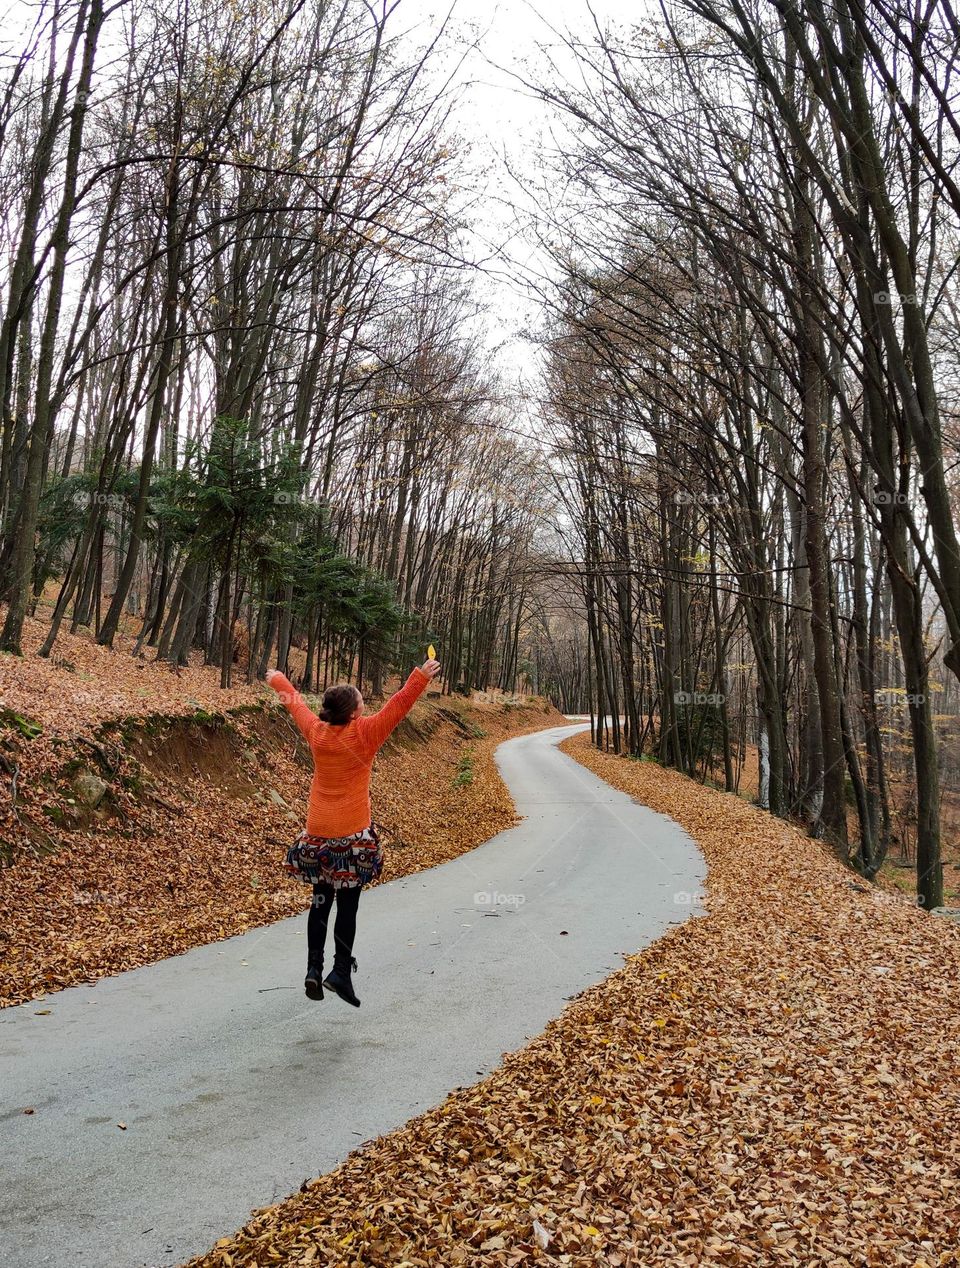 Jump for joy on the autumn path